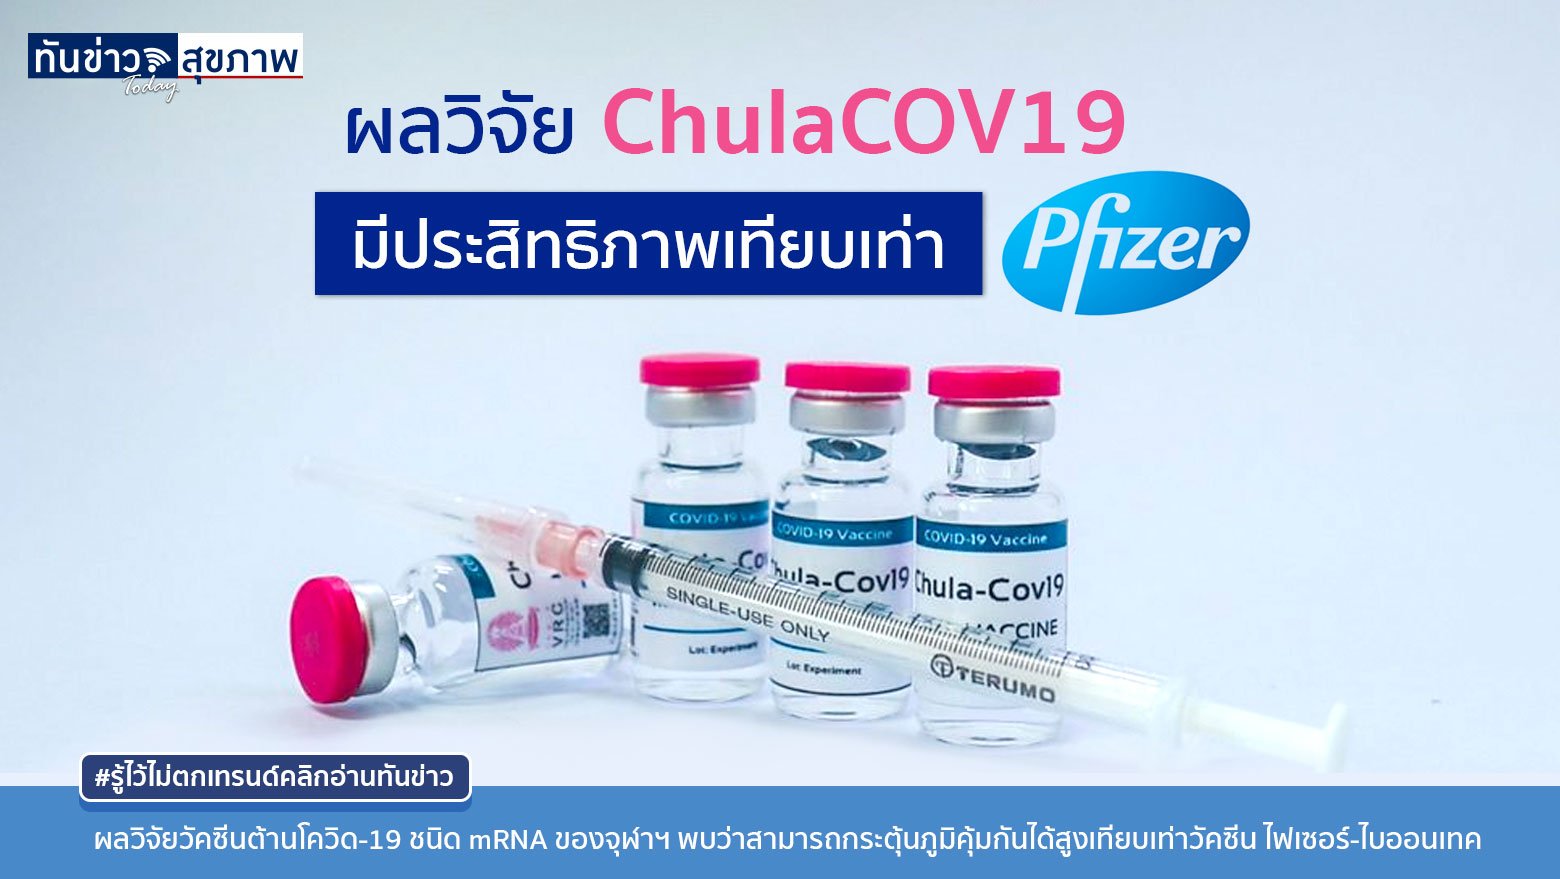 วัคซีนผลิตโดยจุฬา หรือ “ChulaCOV19” มีประสิทธิภาพเทียบเท่า ไฟเซอร์ คาดใช้ได้ต้นปีหน้า